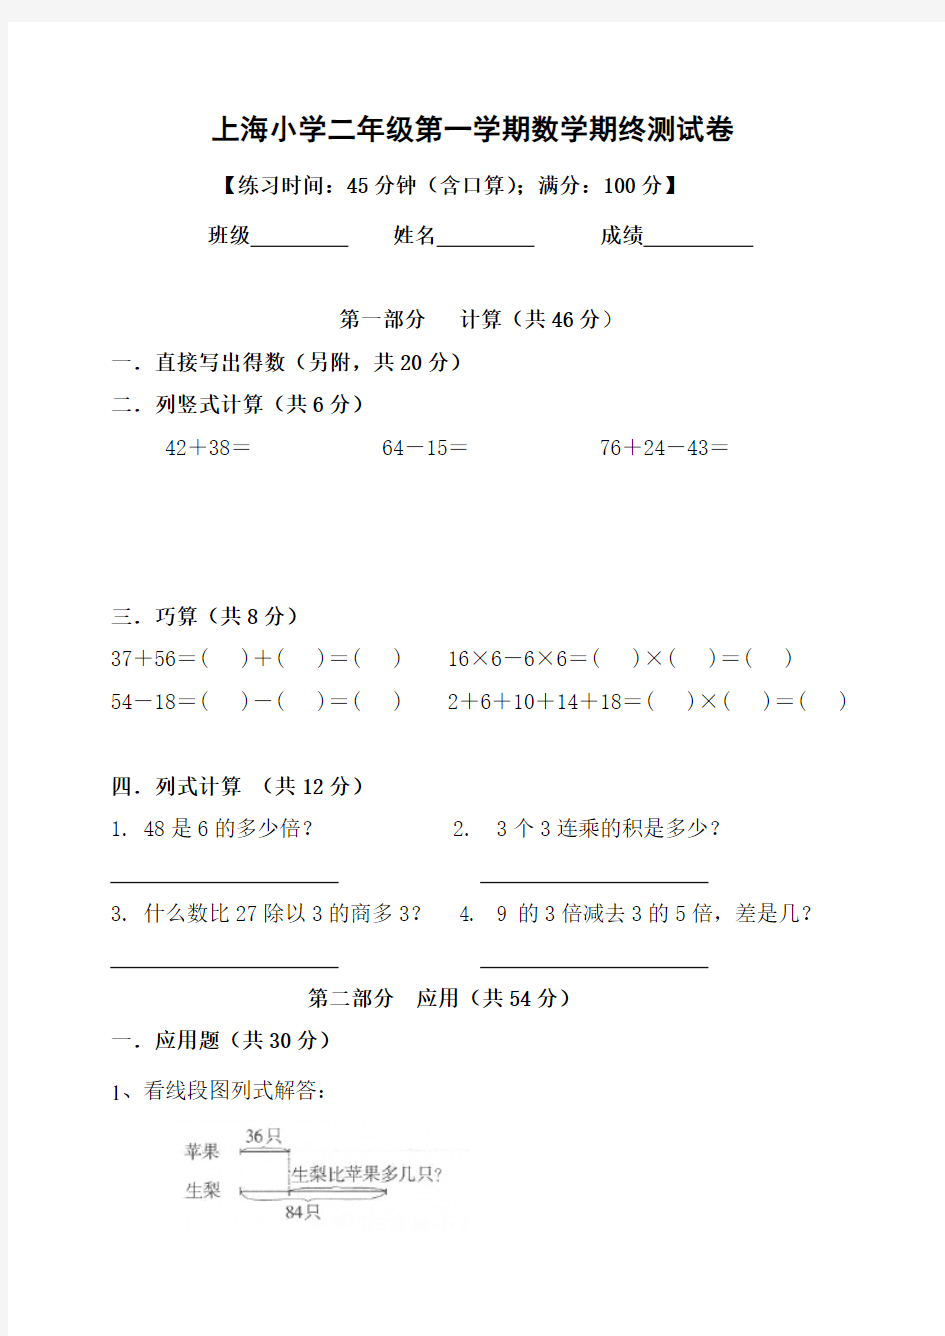 上海小学二年级第一学期数学期终测试卷